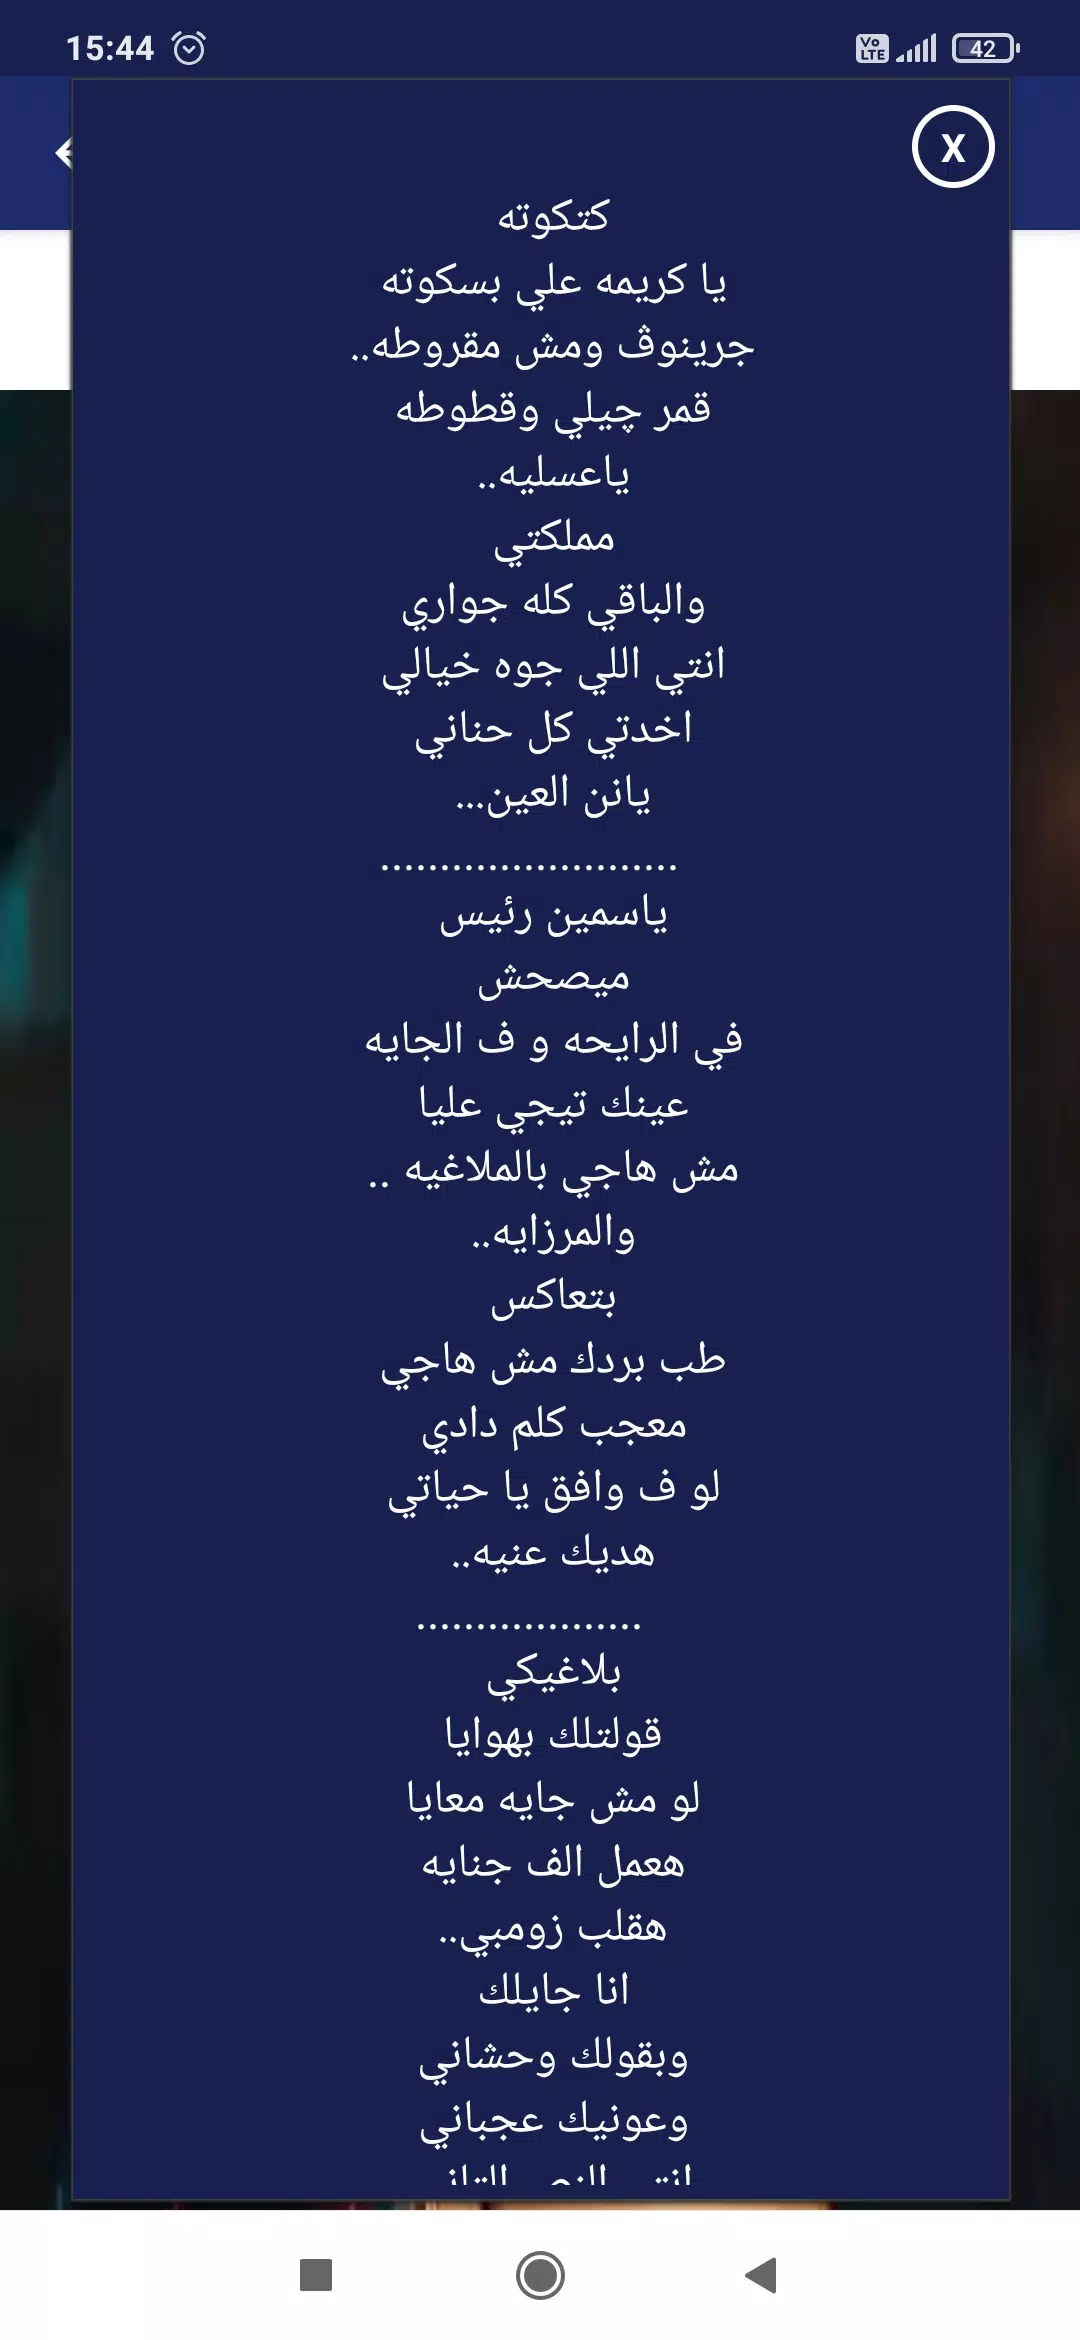 下载مهرجان حبيبتي افتحي شباكك انا جيت - حسن شاكوش的安卓版本